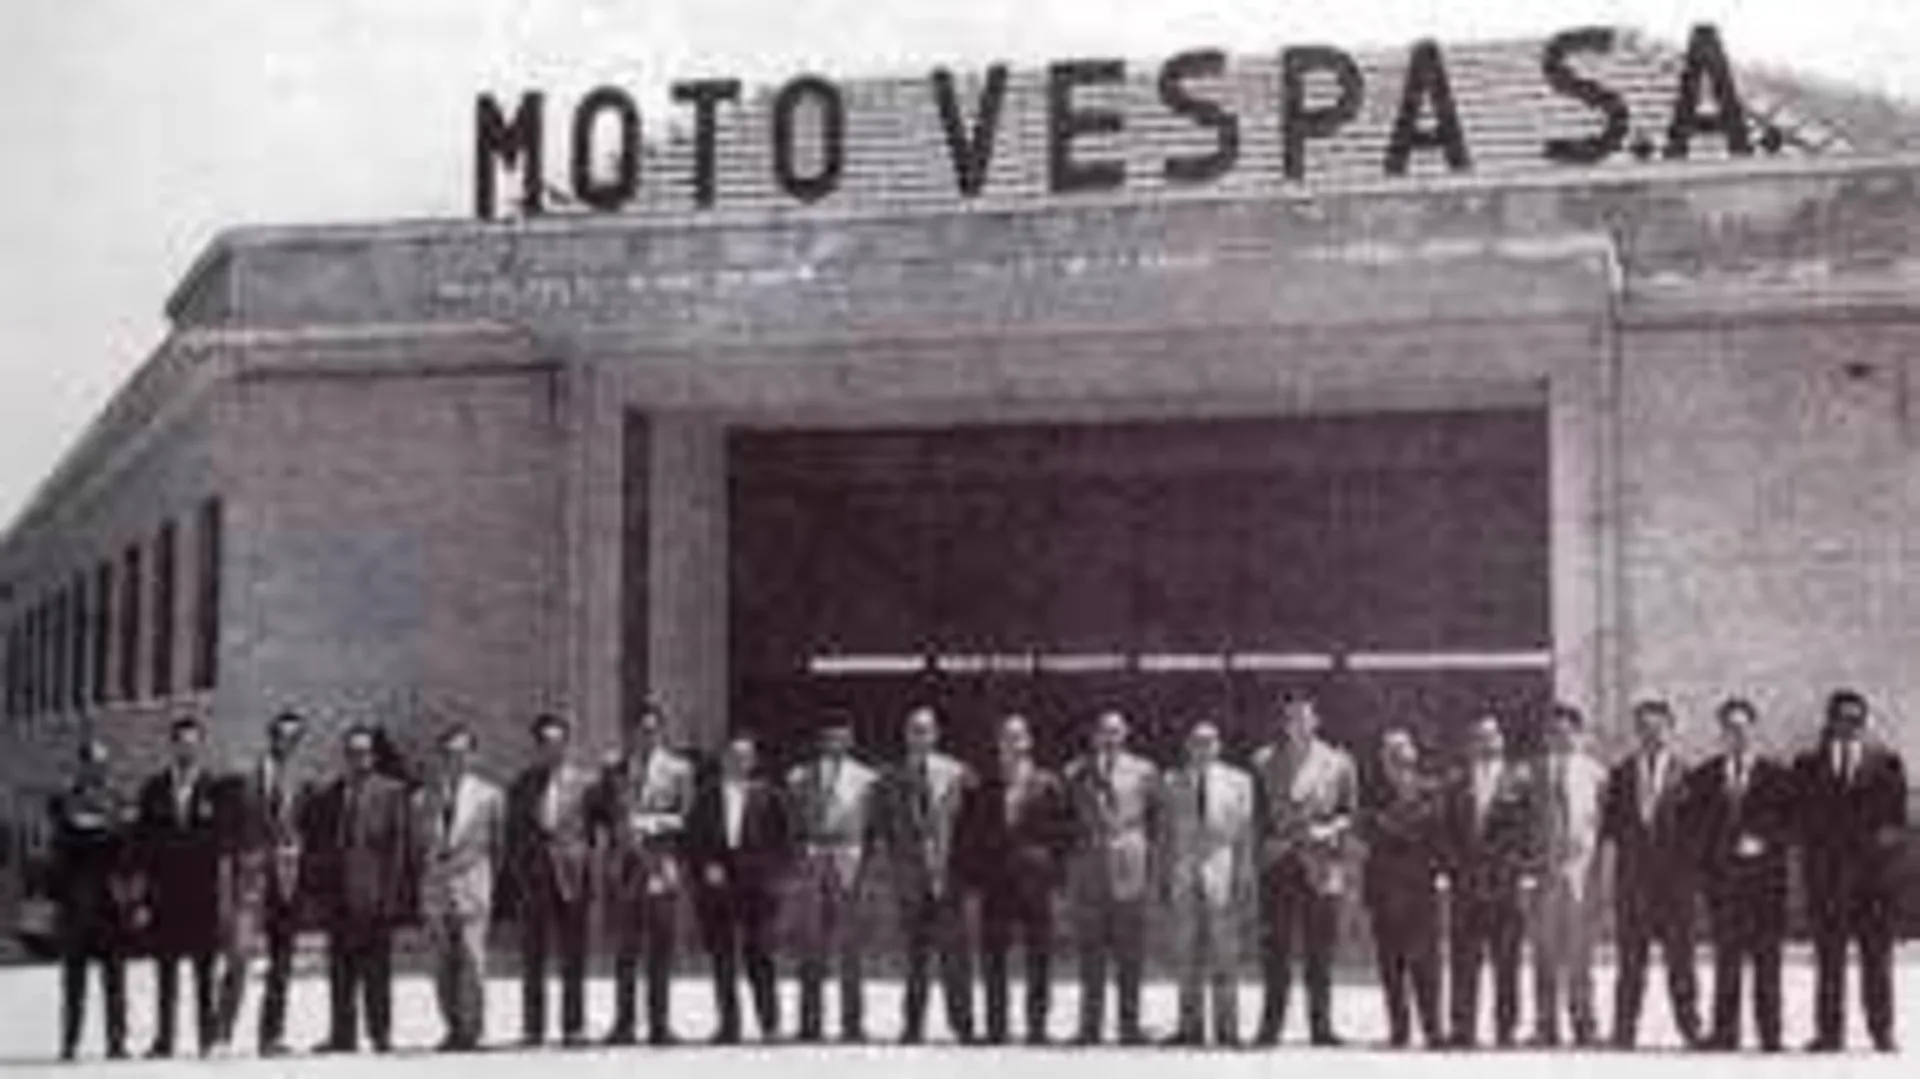 Madrid 1952, Piaggio desembarca en España gracias a Motovespa S.A